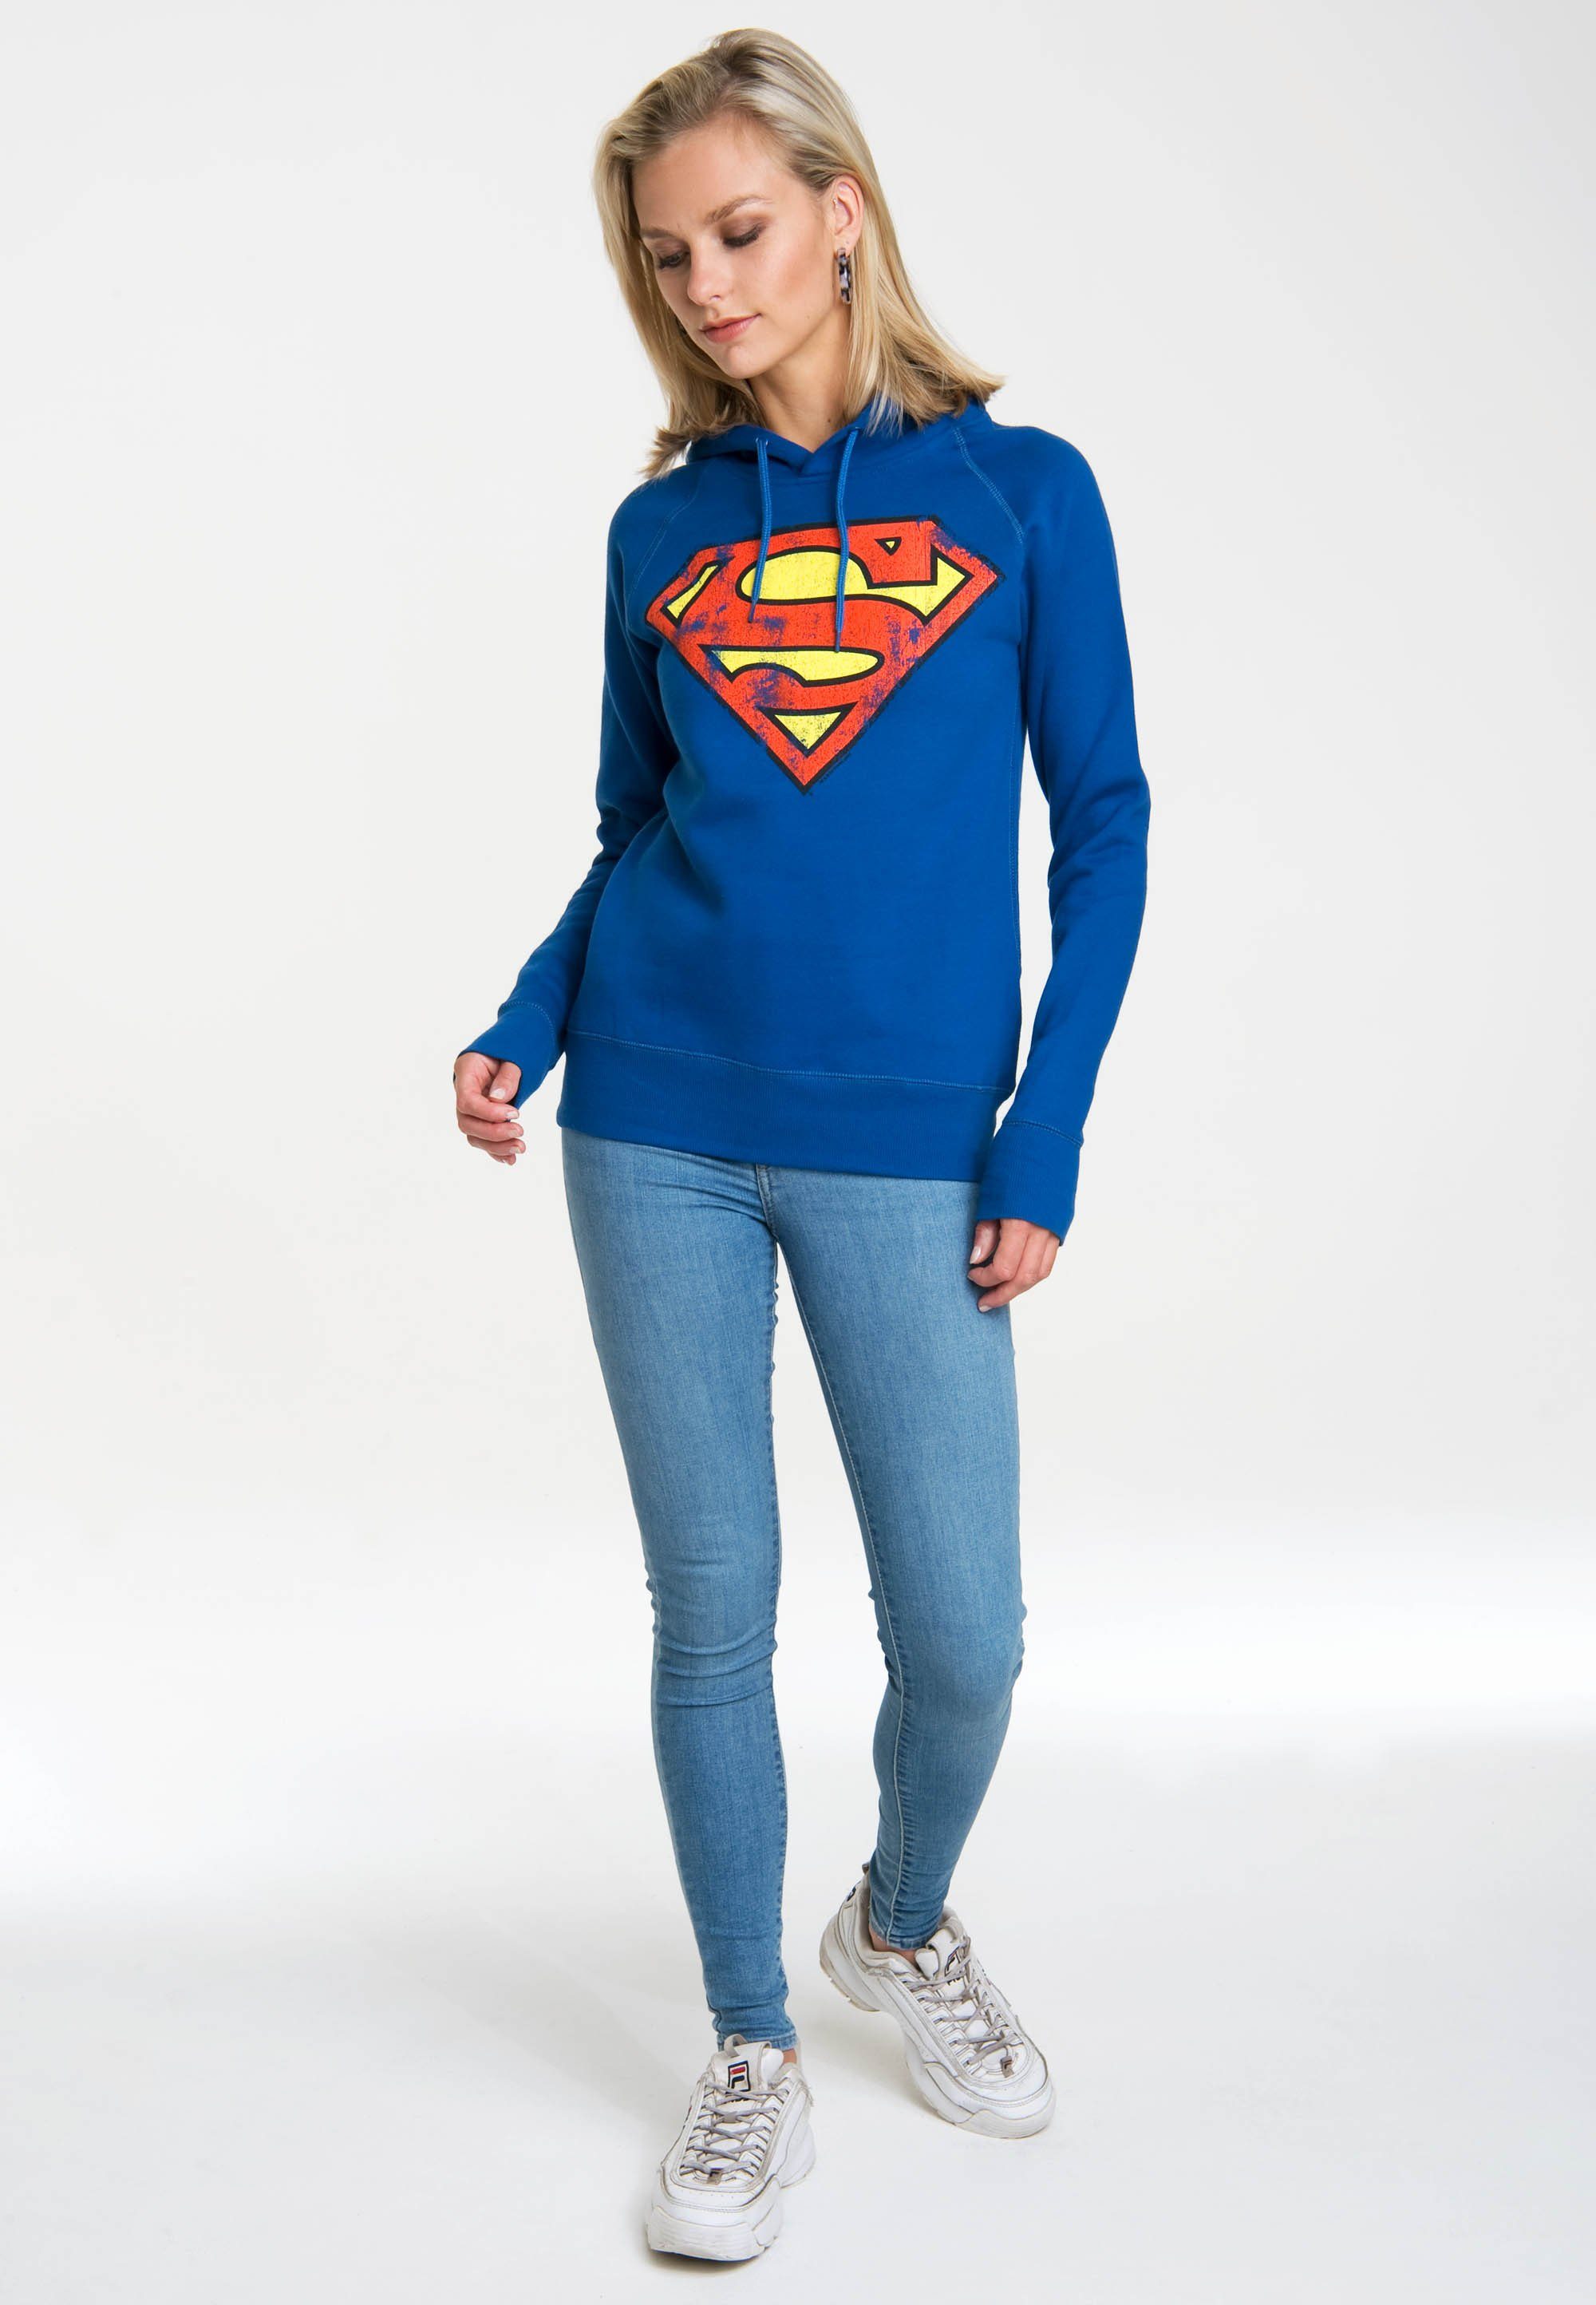 Superman Logoshirt - DC Kapuzensweatshirt von Damen Trendiges LOGOSHIRT für Kapuzensweatshirt Superhelden-Print, mit Logo